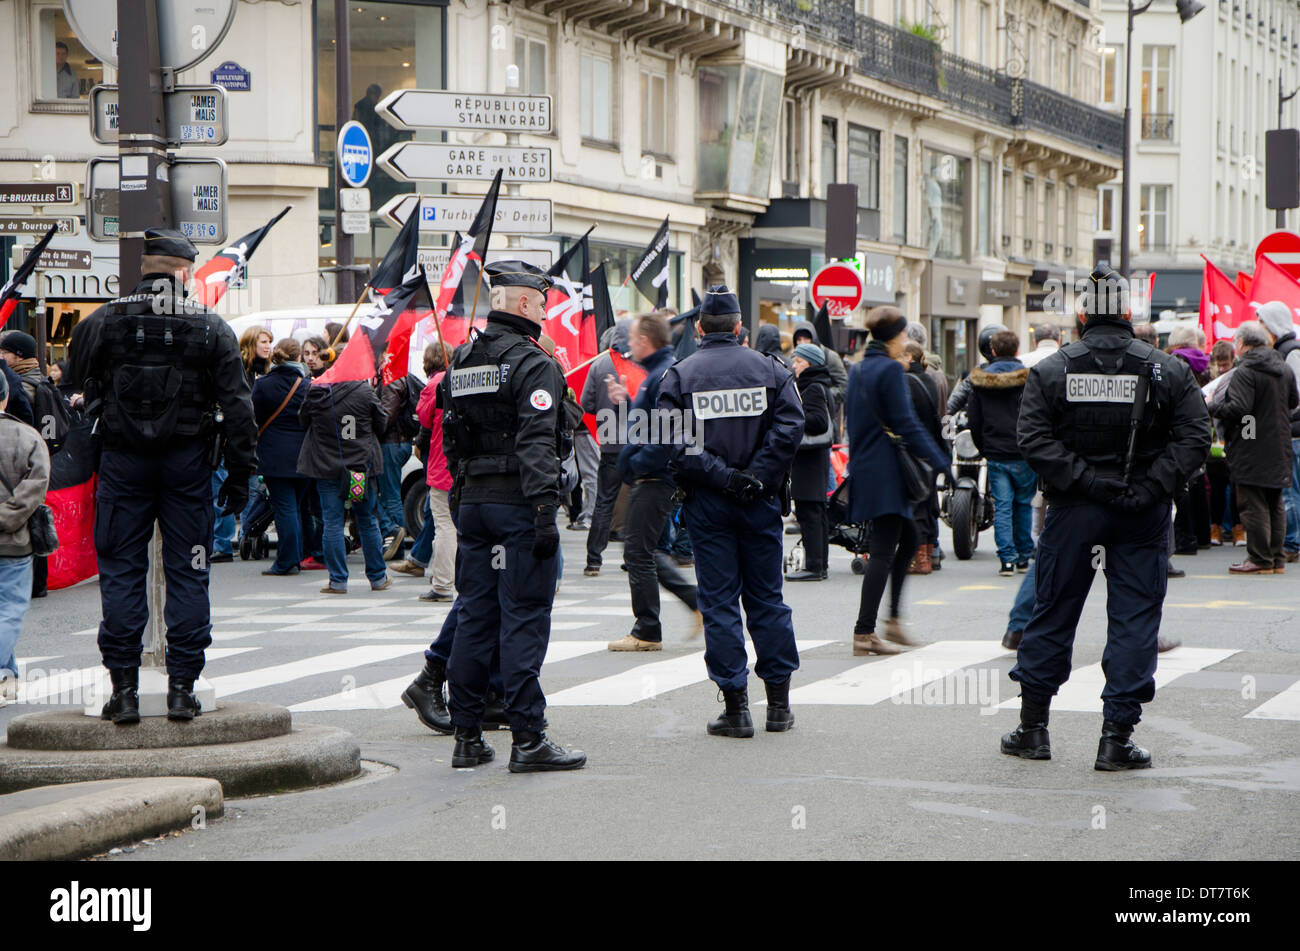 Polizia francese nella manifestazione a Parigi contro la chiusura del reparto di maternità des Lilas (Periferia di Parigi). La Francia. Foto Stock